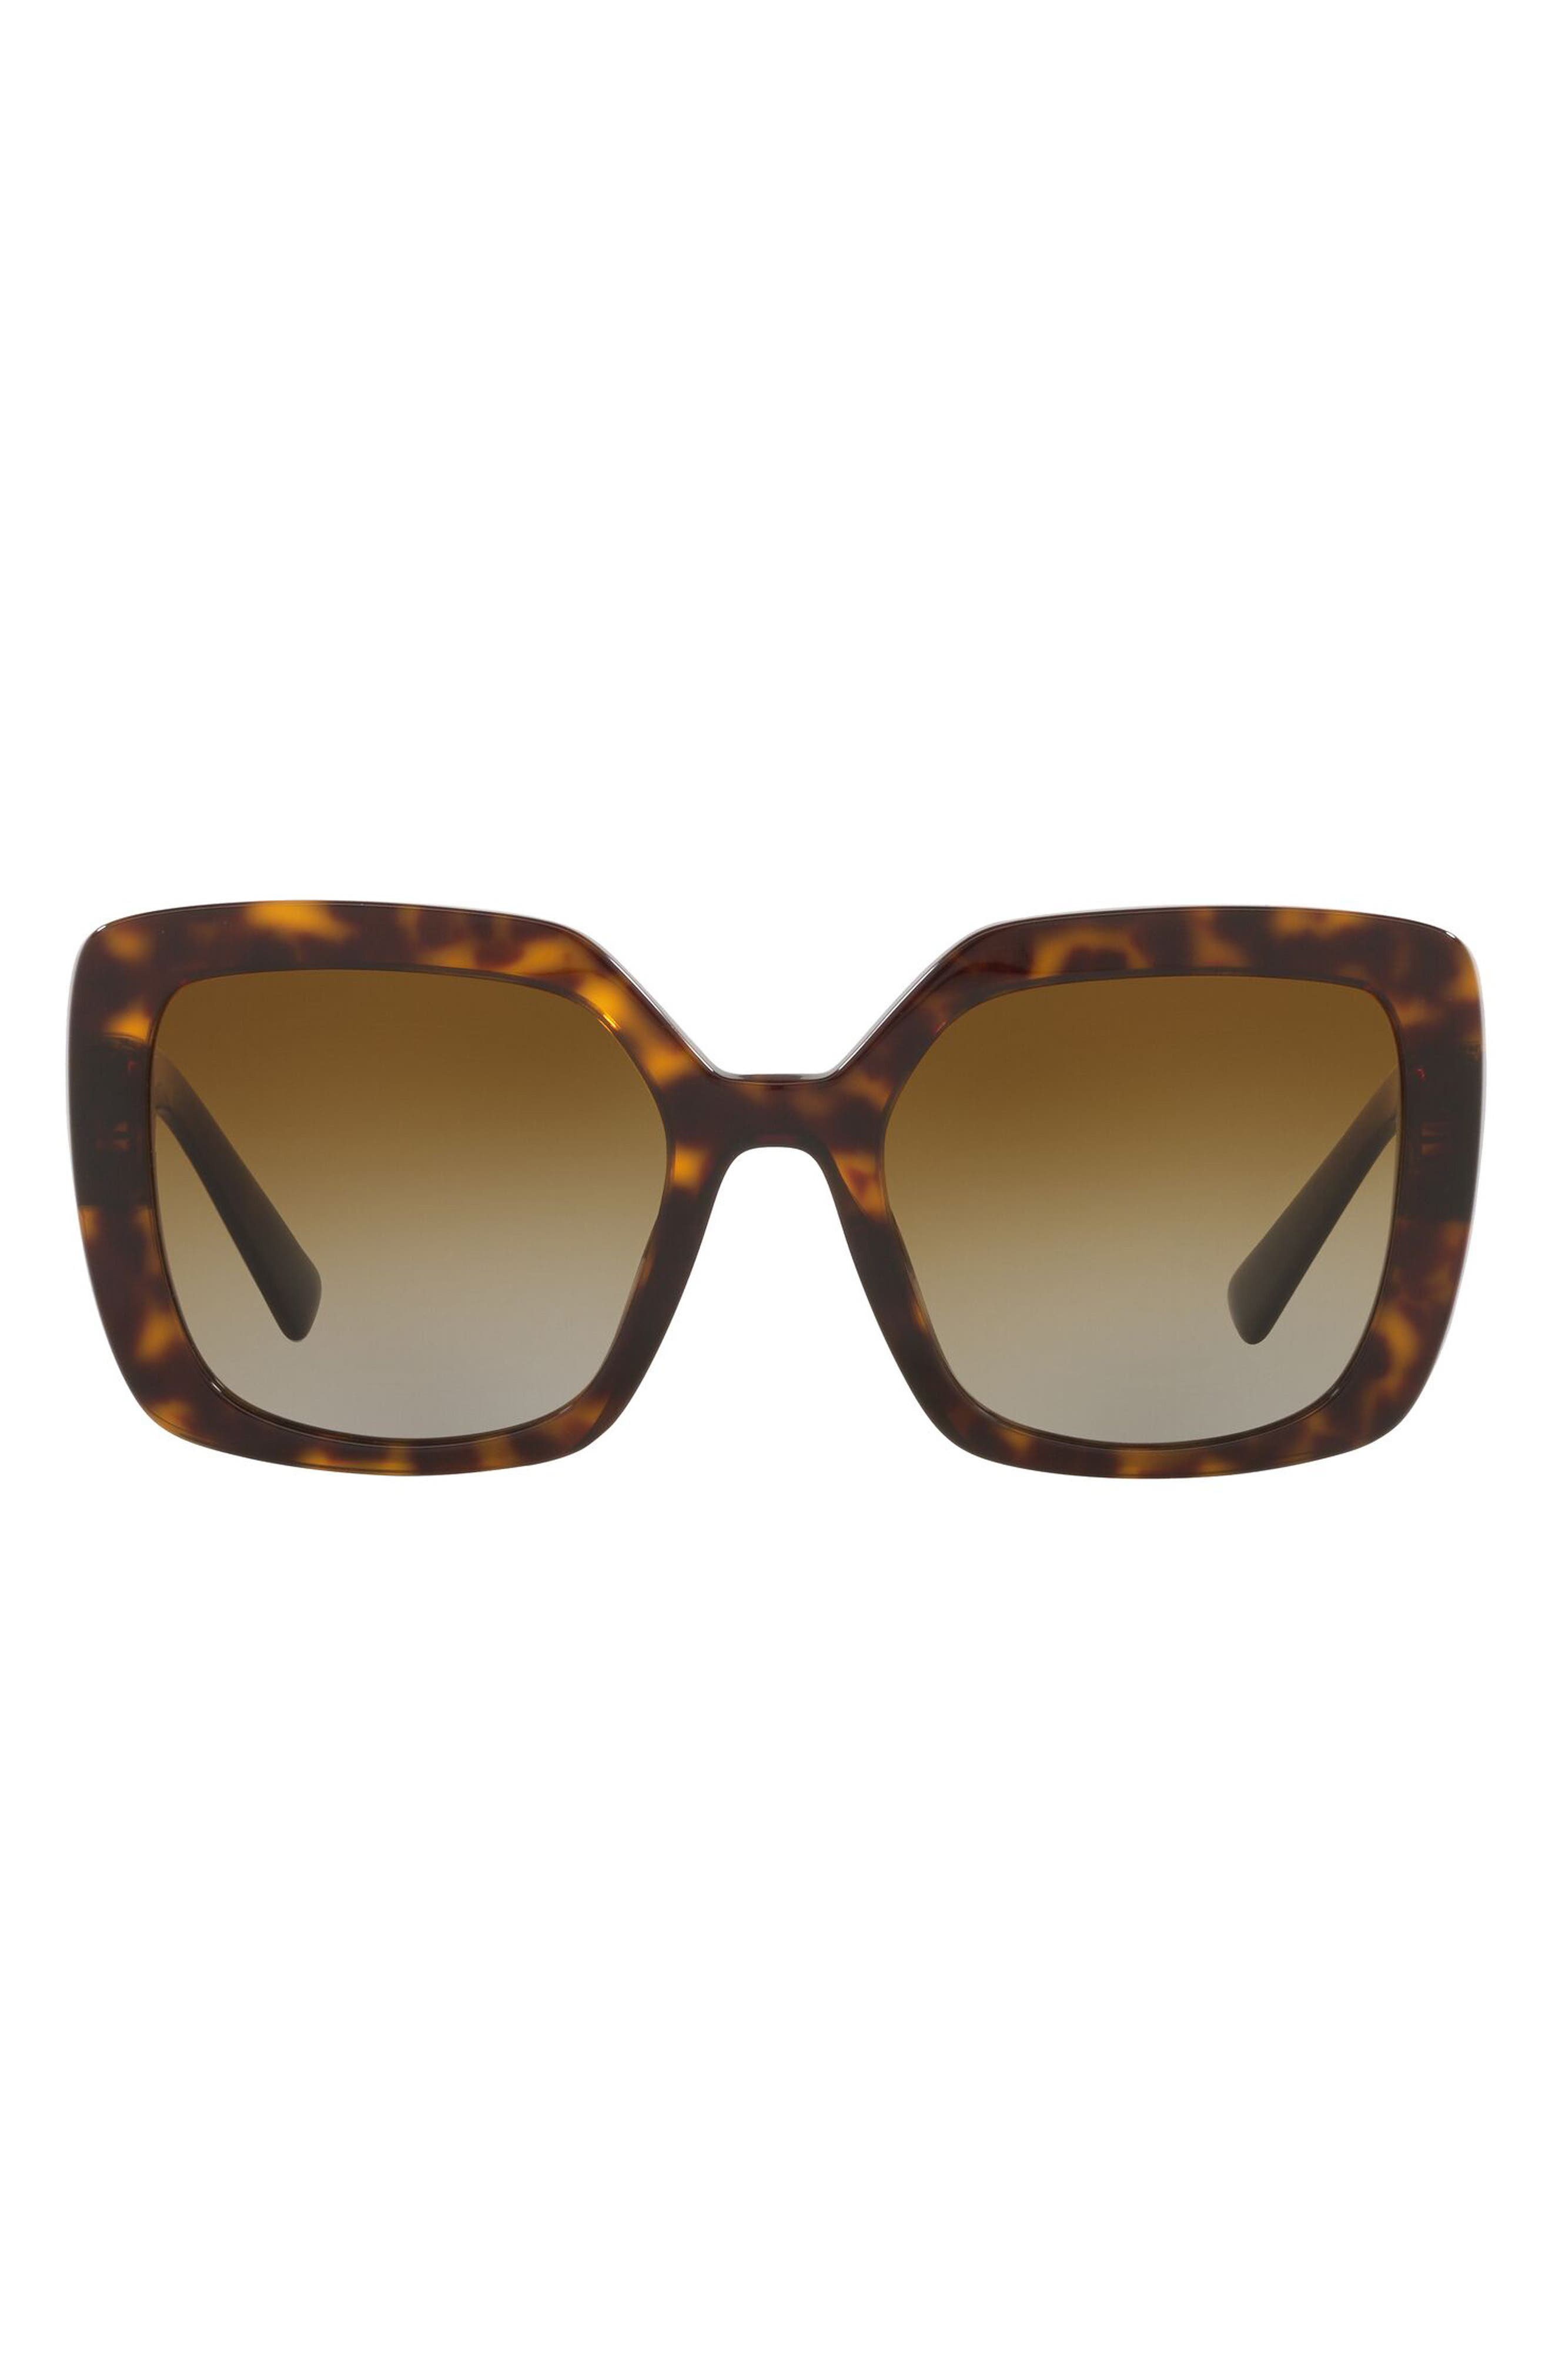 Valentino Dark Havana 53mm Square Sunglasses in Havana/Grad Brown Polarized at Nordstrom